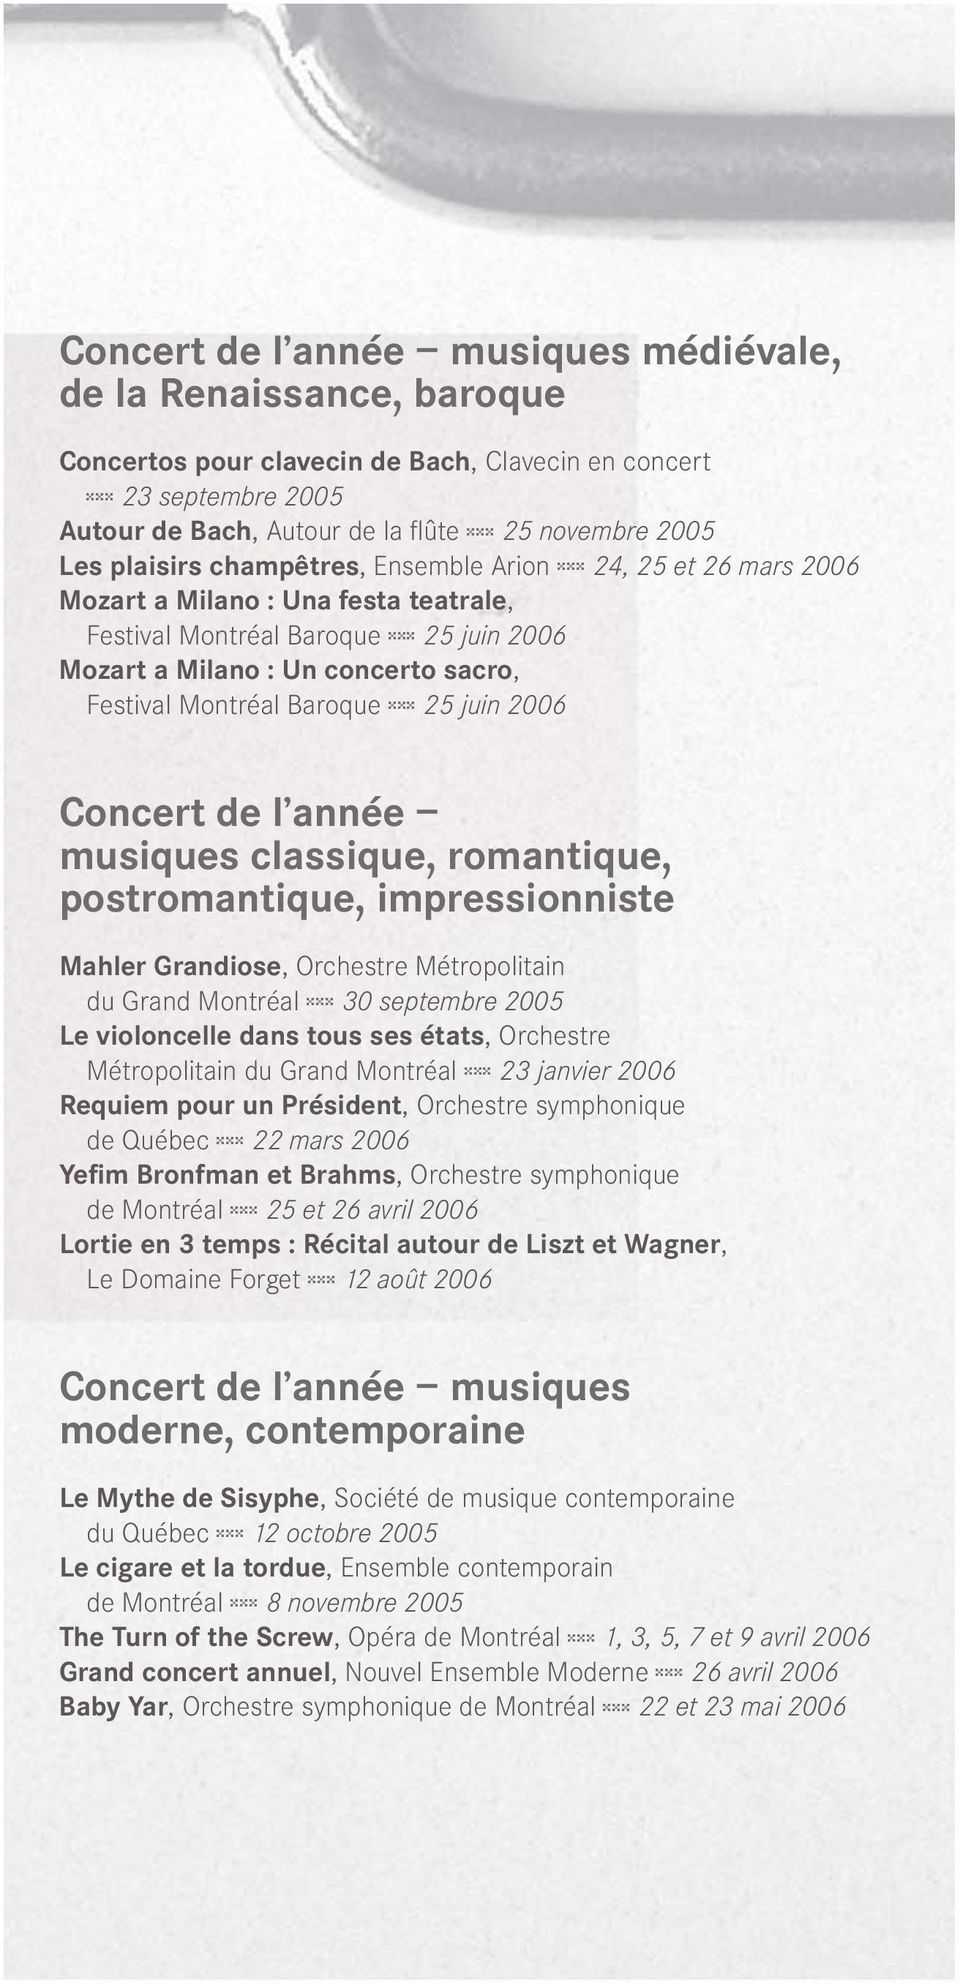 Montréal Baroque zzz 25 juin 2006 Concert de l année musiques classique, romantique, postromantique, impressionniste Mahler Grandiose, Orchestre Métropolitain du Grand Montréal zzz 30 septembre 2005